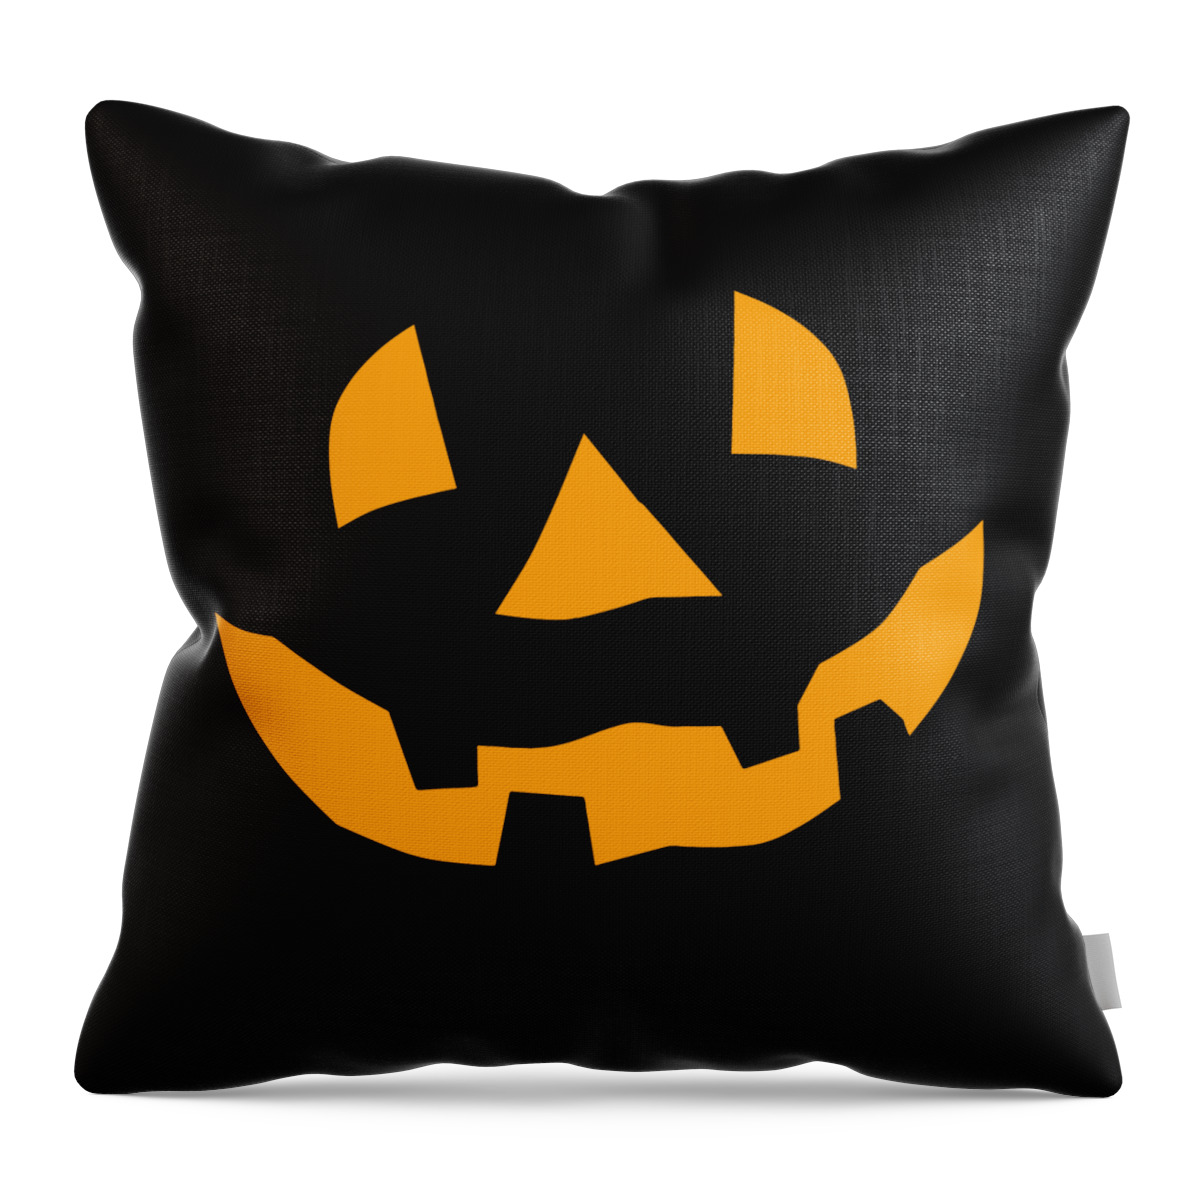 Funny Throw Pillow featuring the digital art Halloween Pumpkin by Flippin Sweet Gear